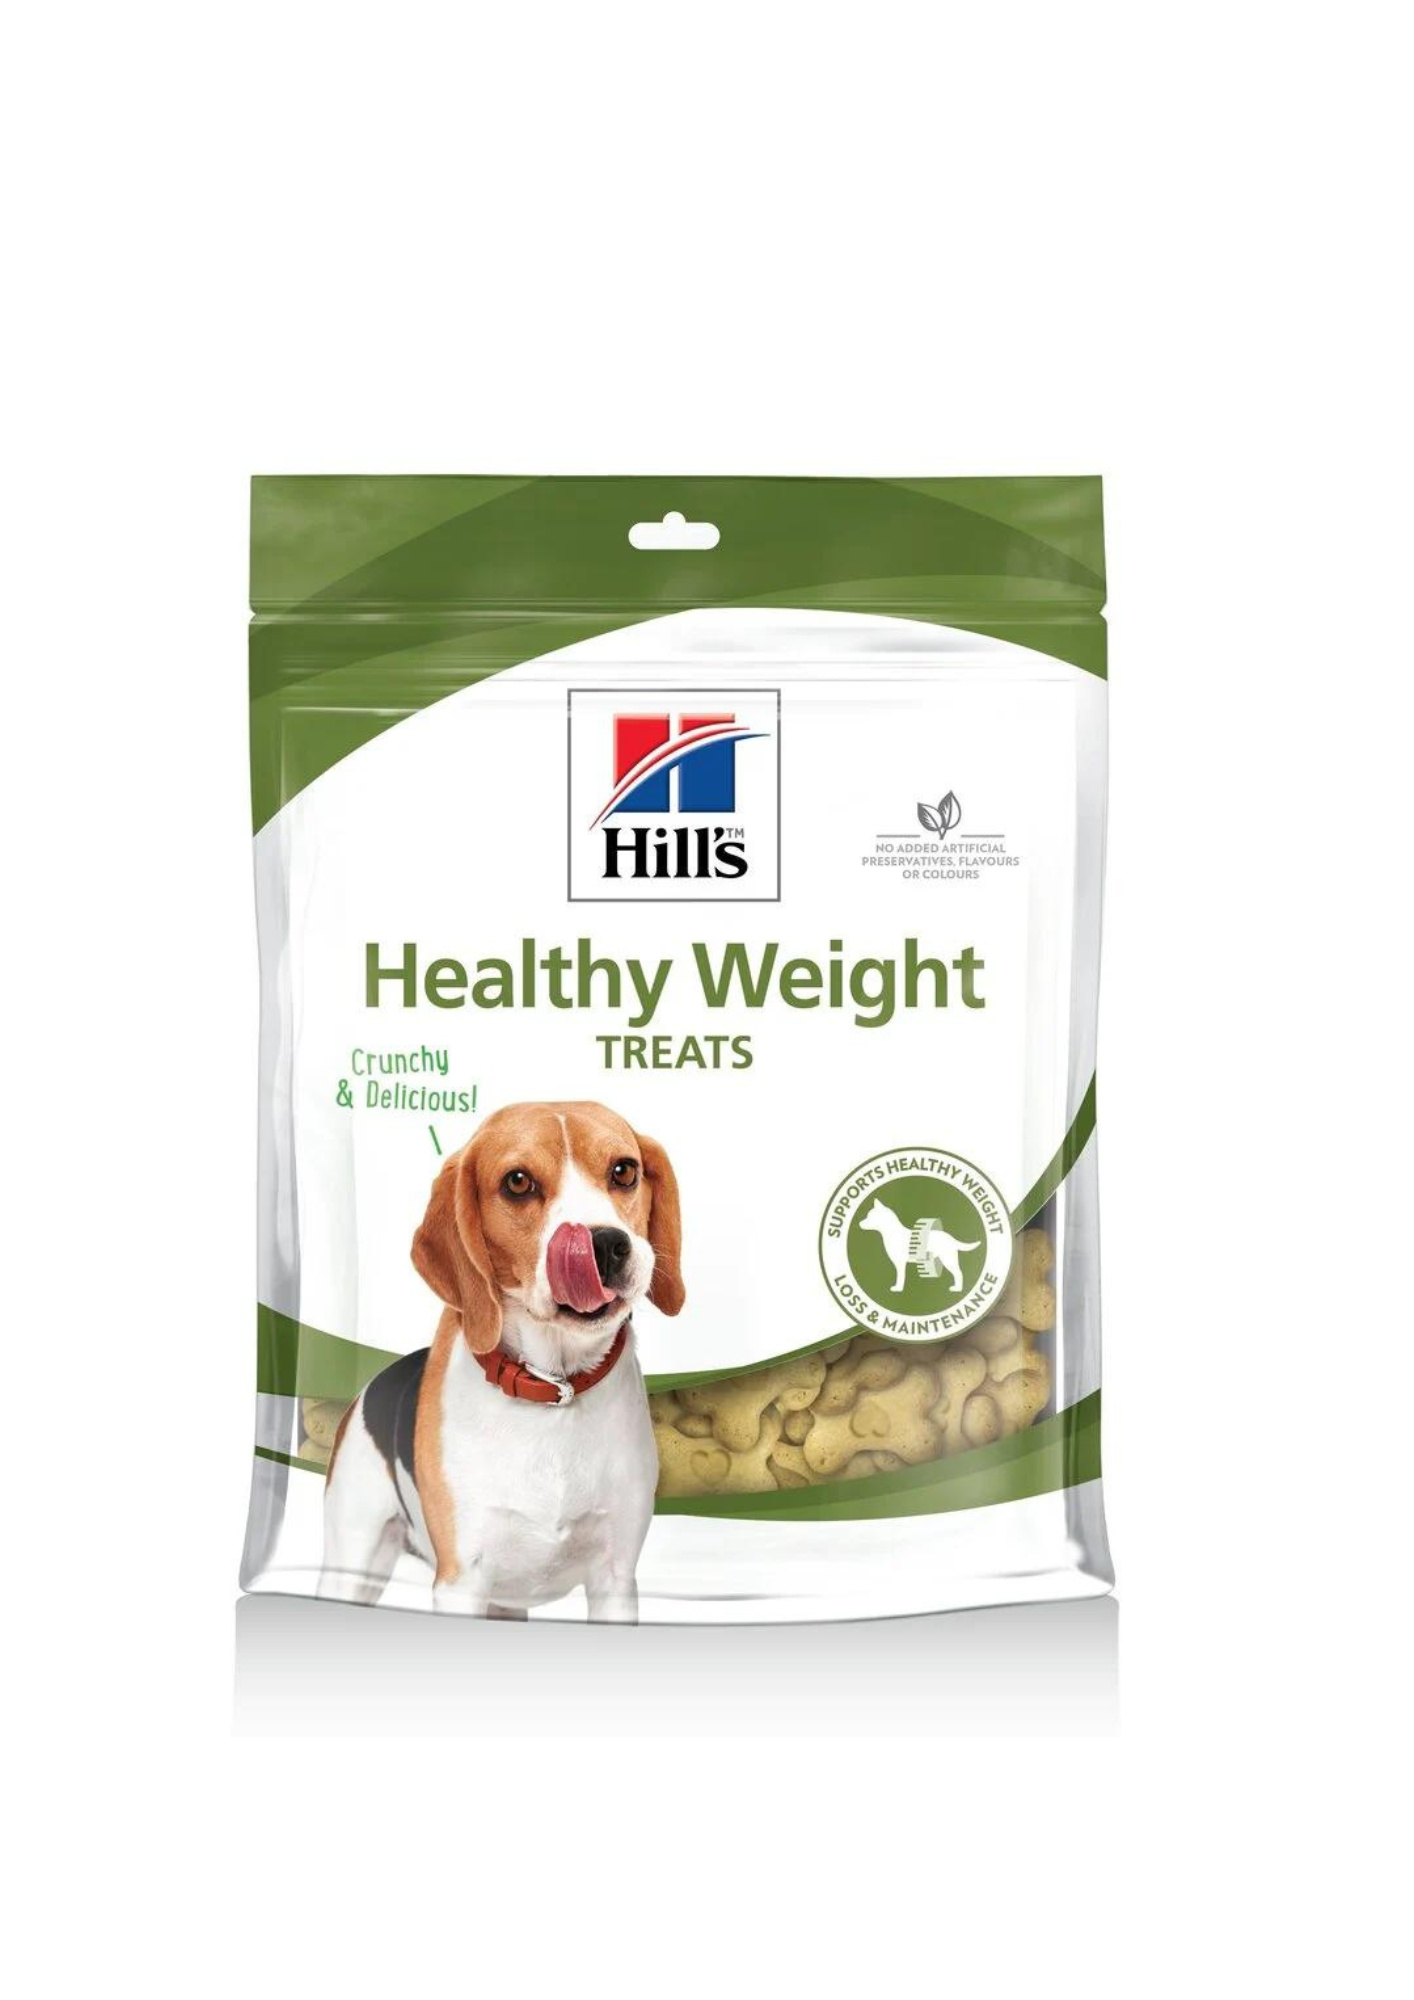 HILL'S HEALTHY WEIGHT Kārumi suņiem veselīgam svaram, 220g